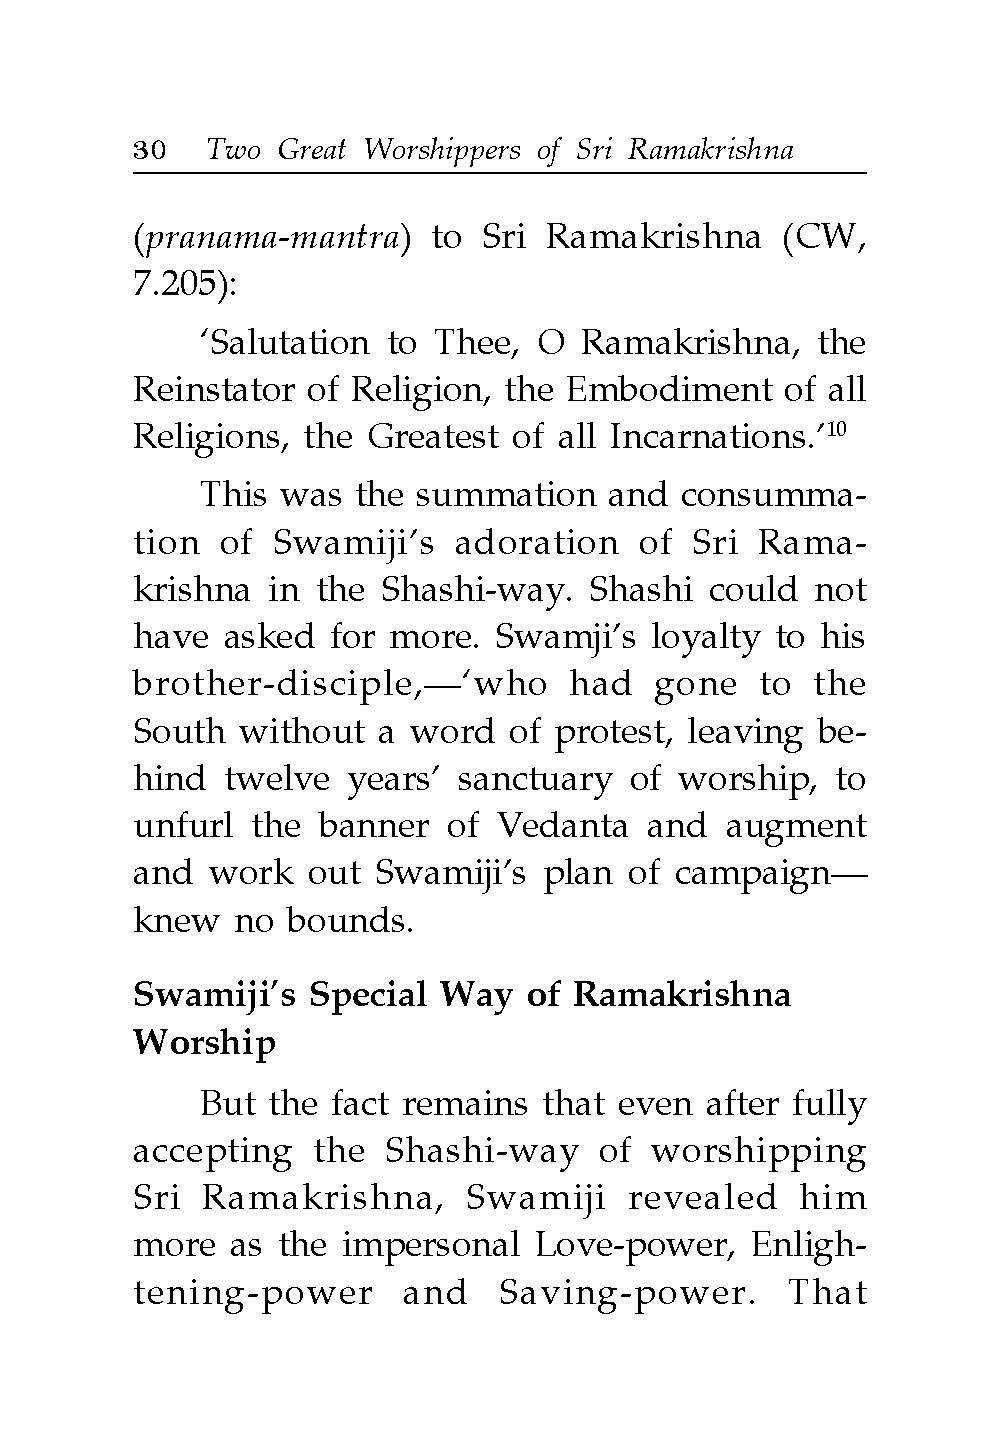 Two Great Worshippers of Sri Ramakrishna